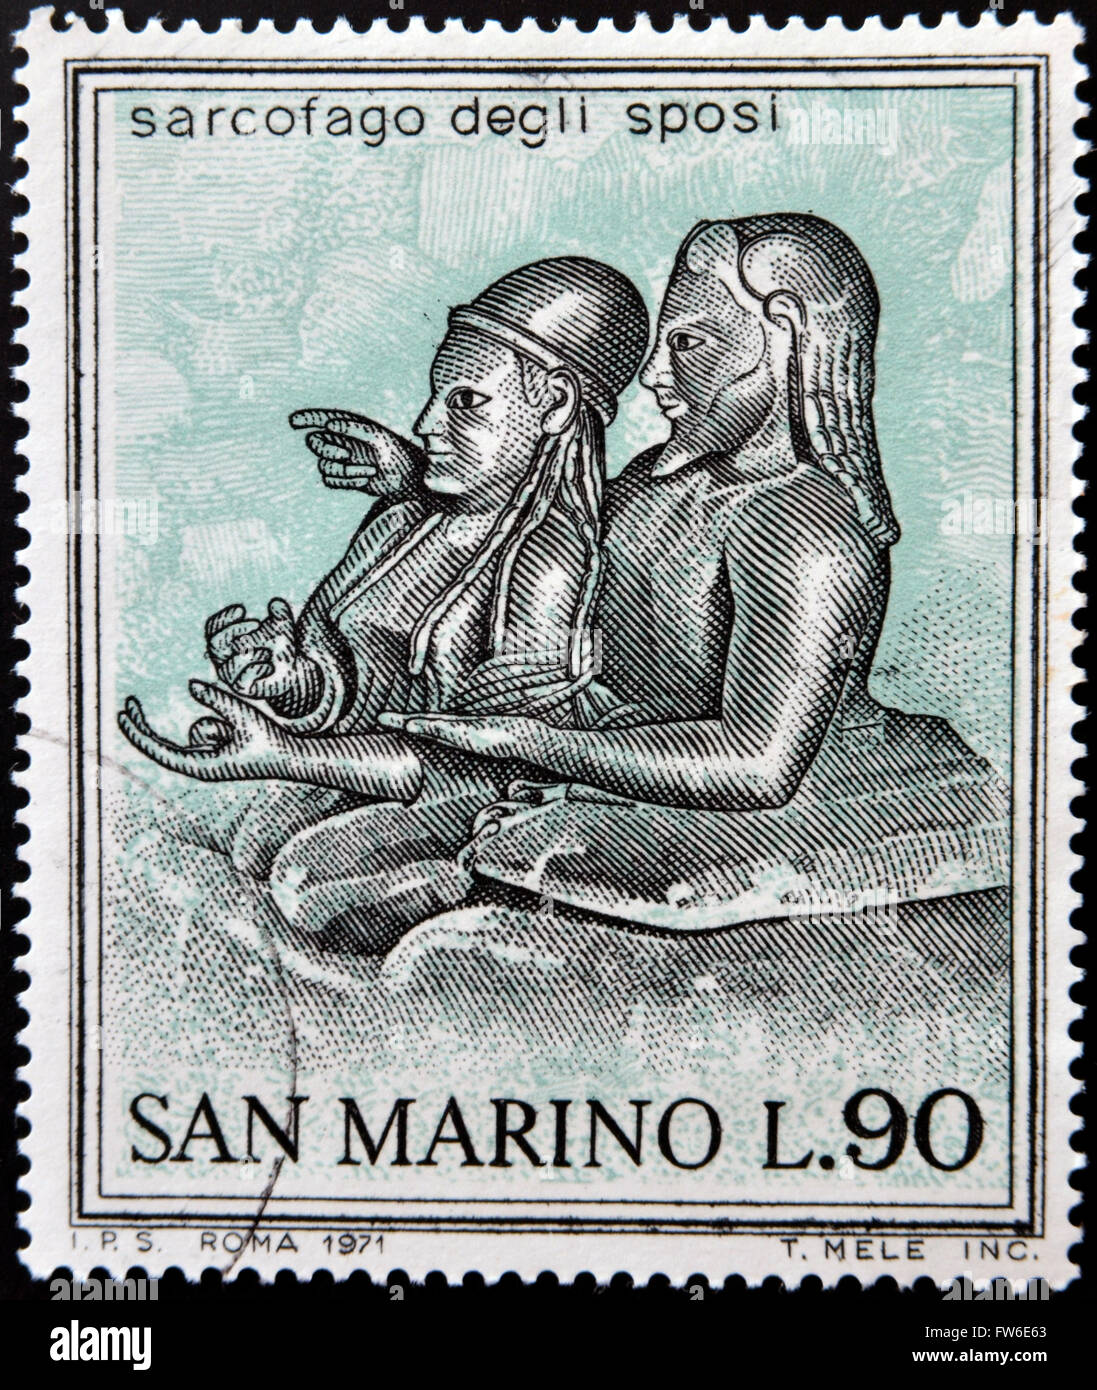 SAN MARINO - circa 1971: un sello impreso en San Marino dedicado a antiguos etruscos, muestra el sarcófago de una pareja casada Foto de stock